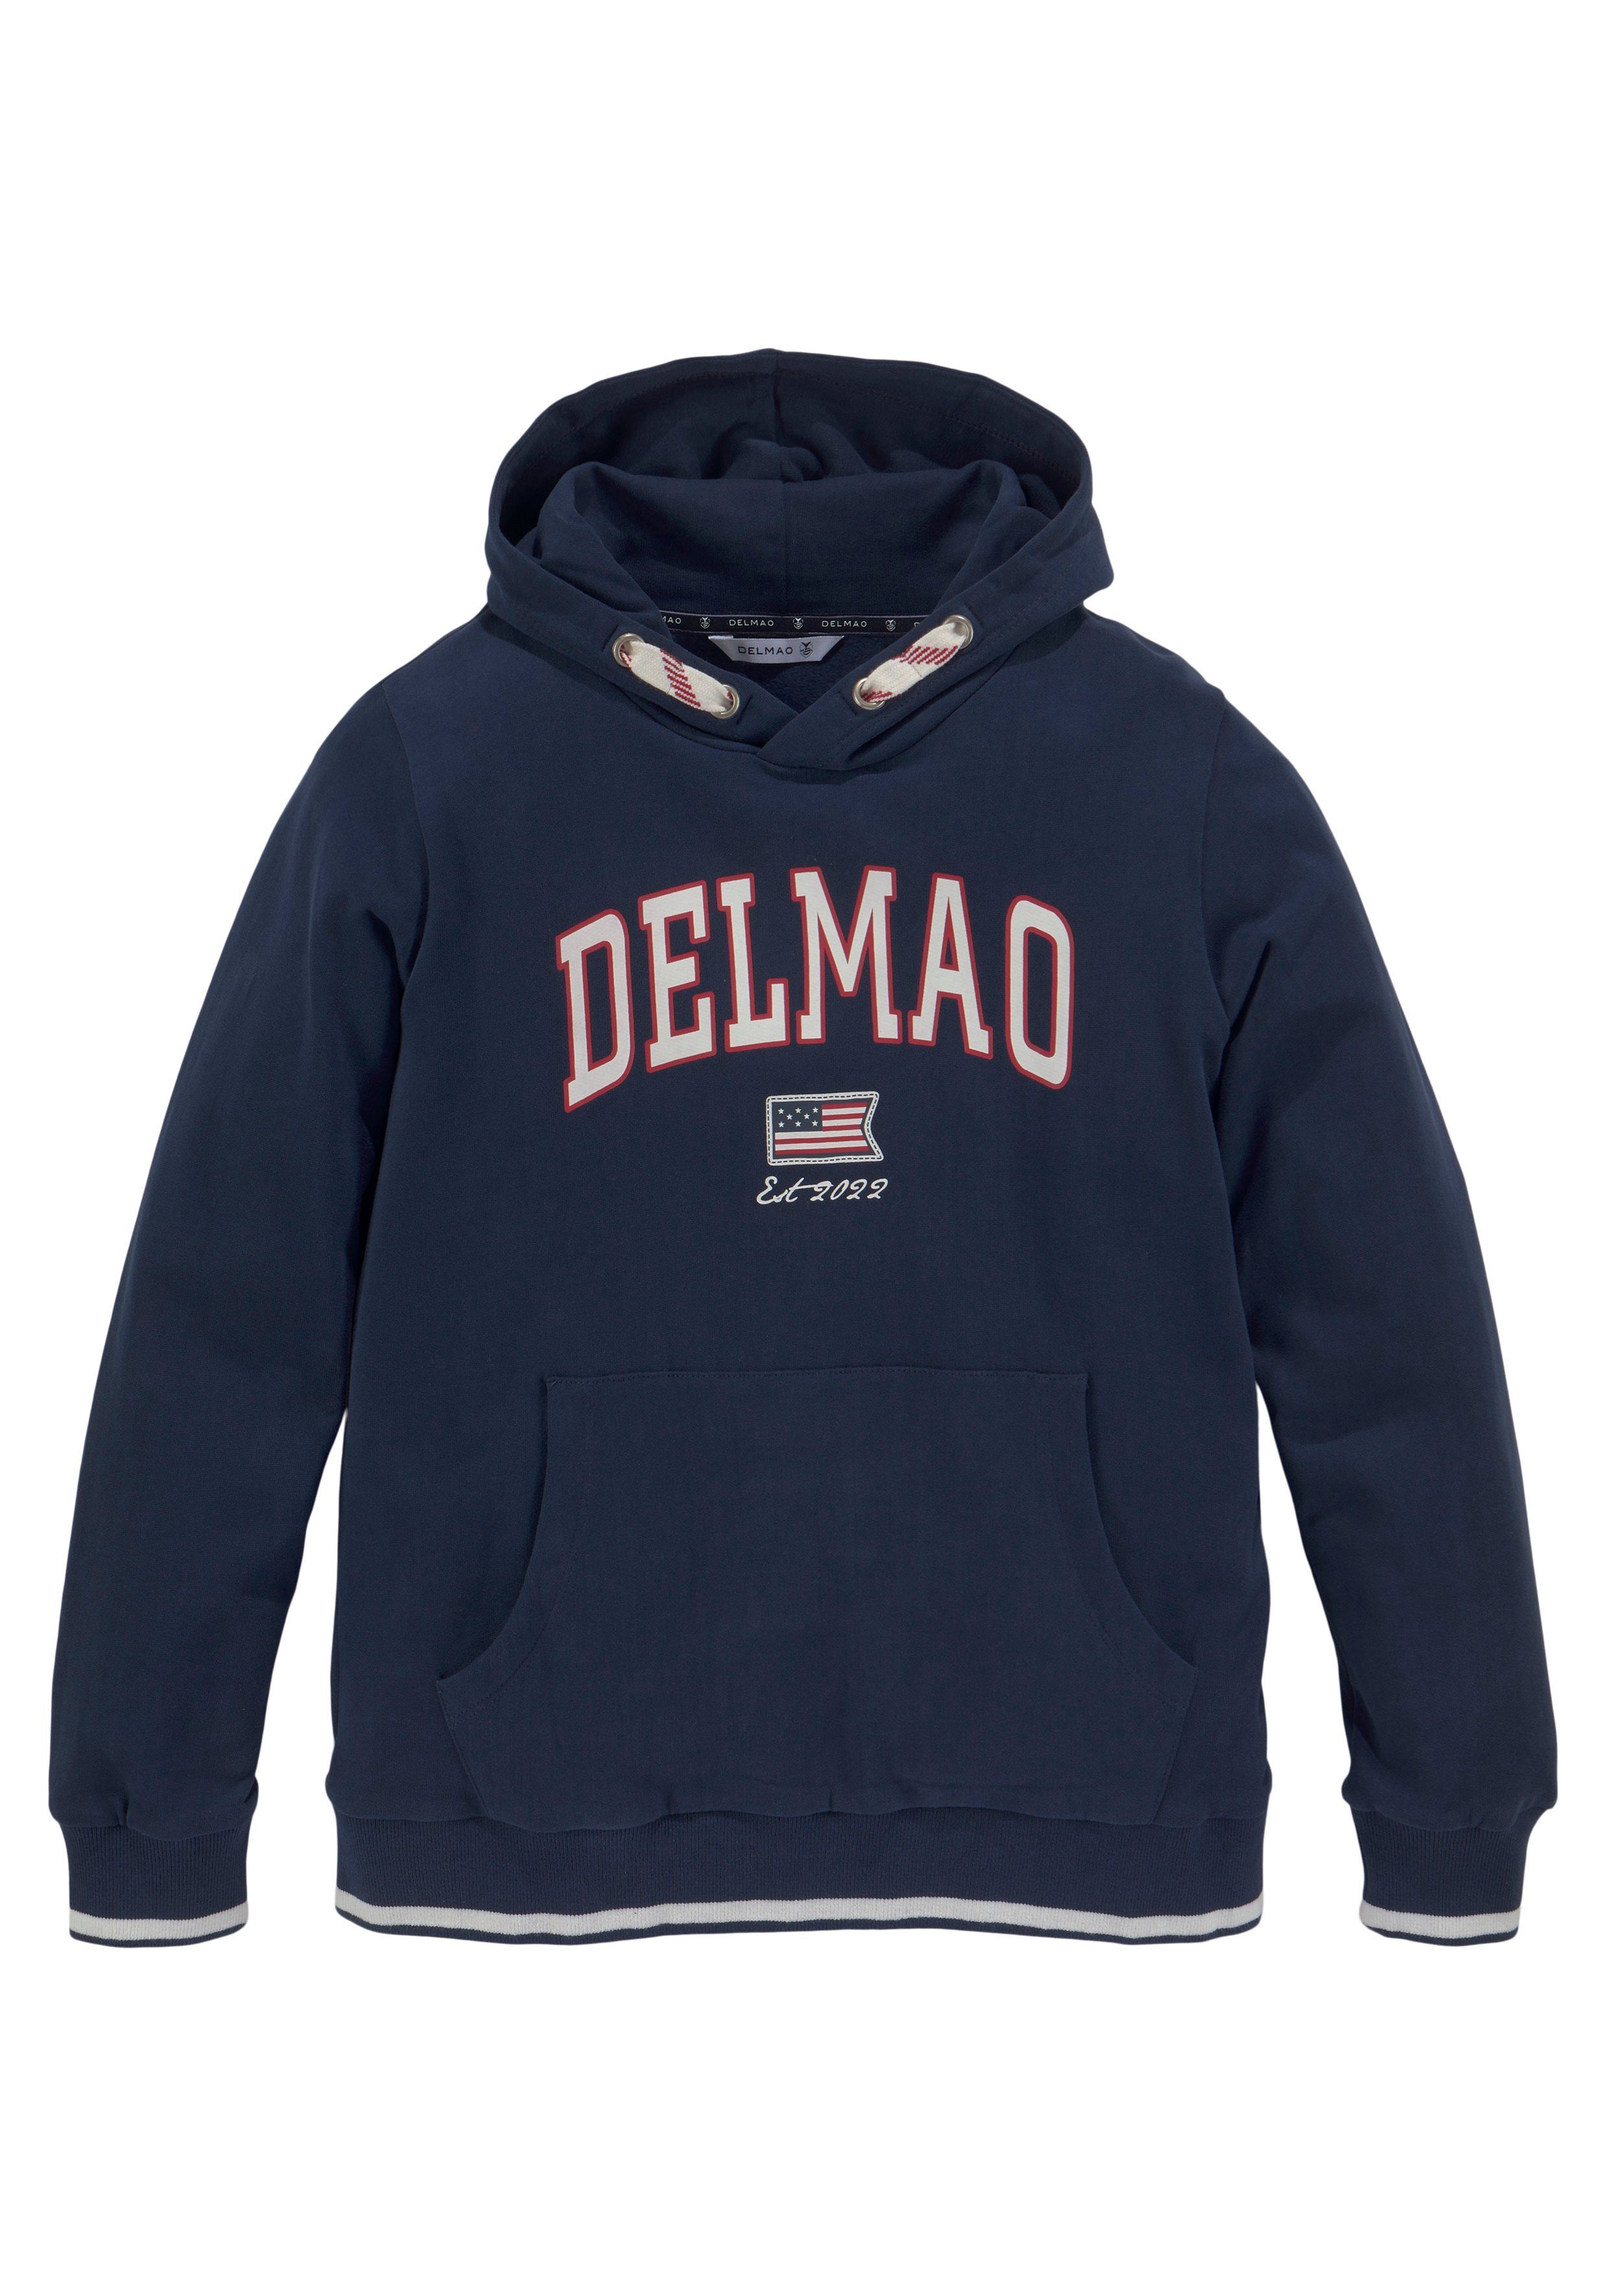 DELMAO Logo-Sweathirt Delmao der Jungen, Marke neuen für Kapuzensweatshirt